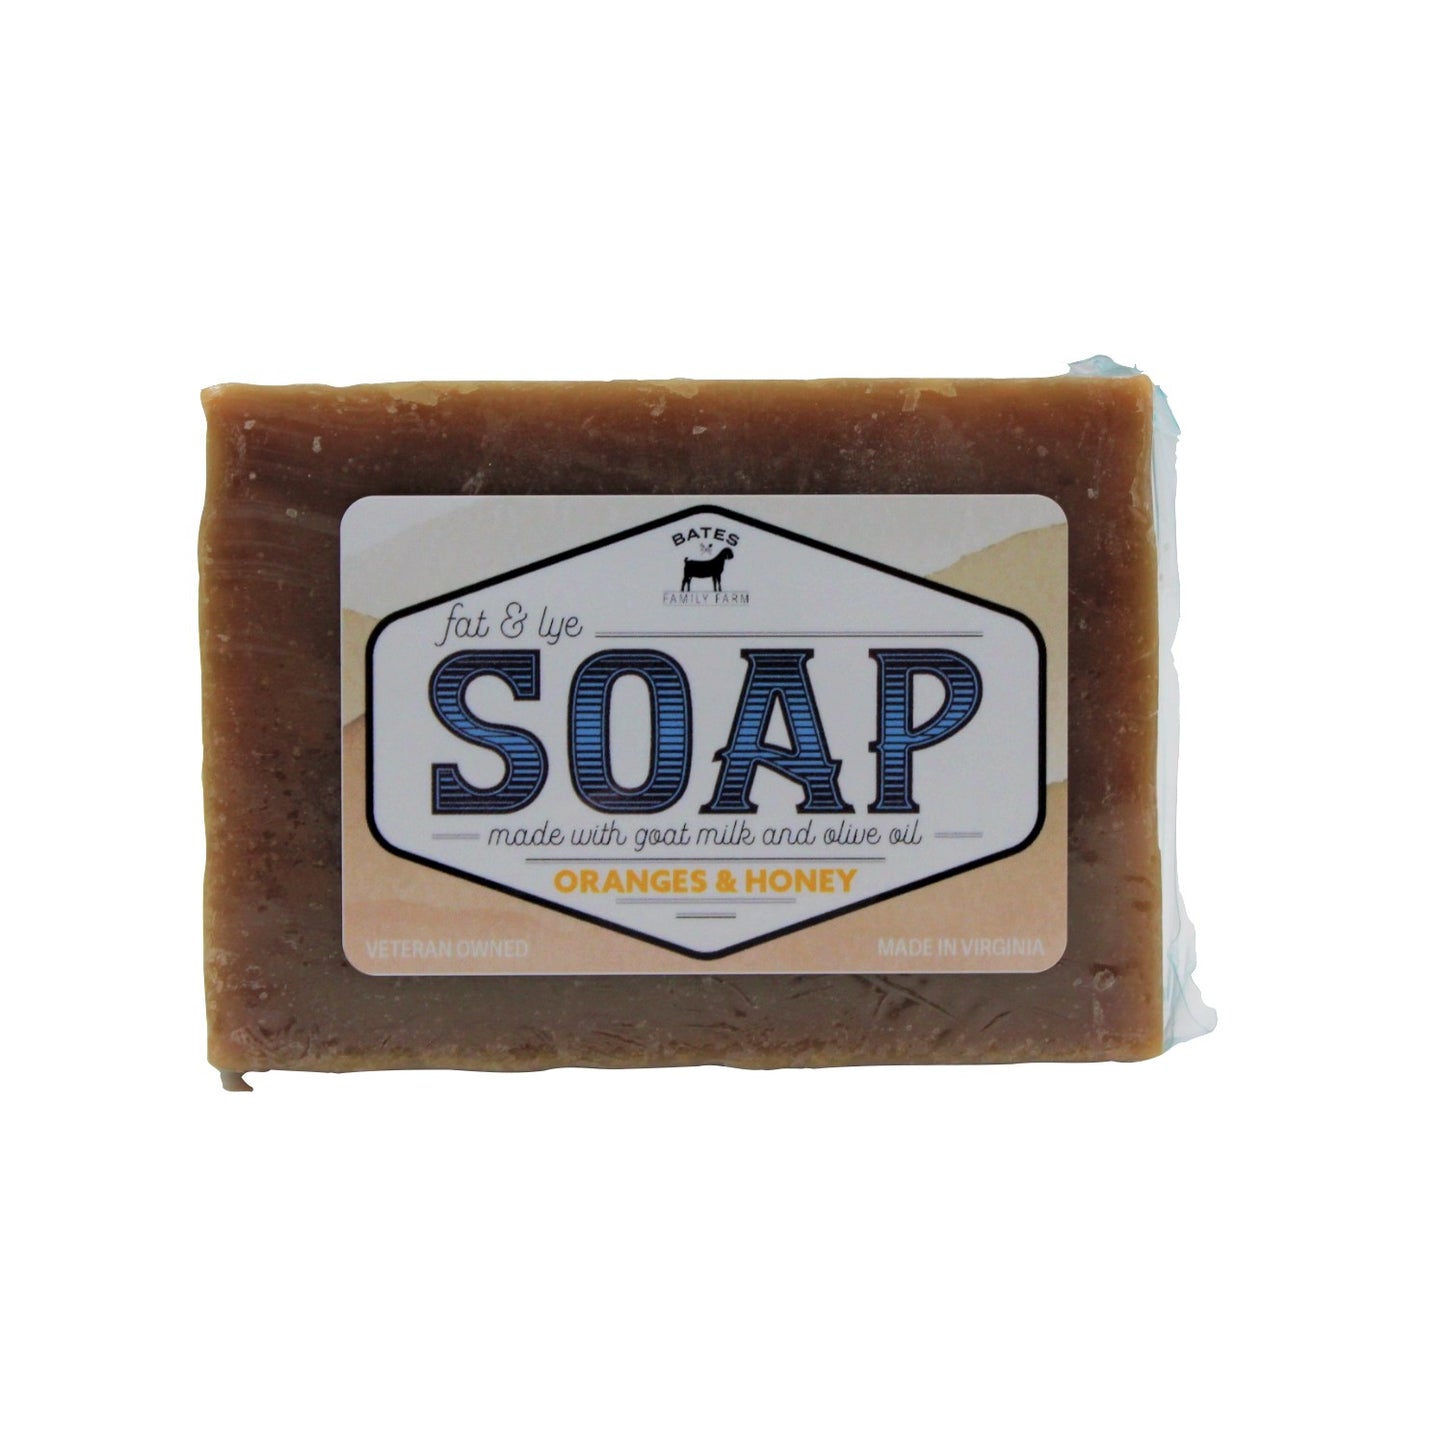 Goat Milk Soap